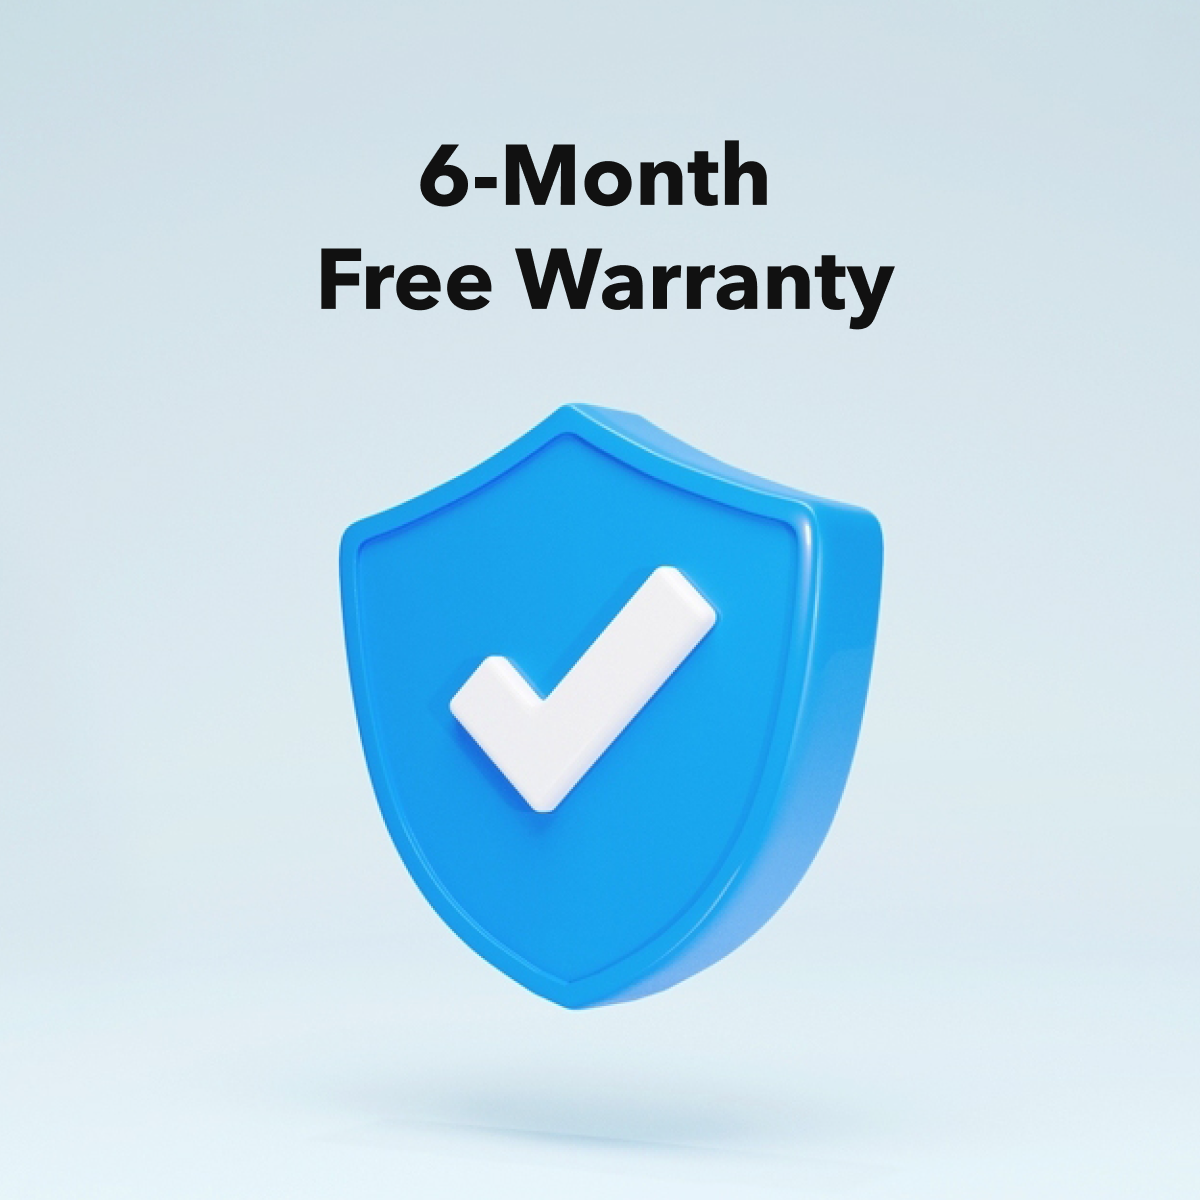 Free 6-month Warranty